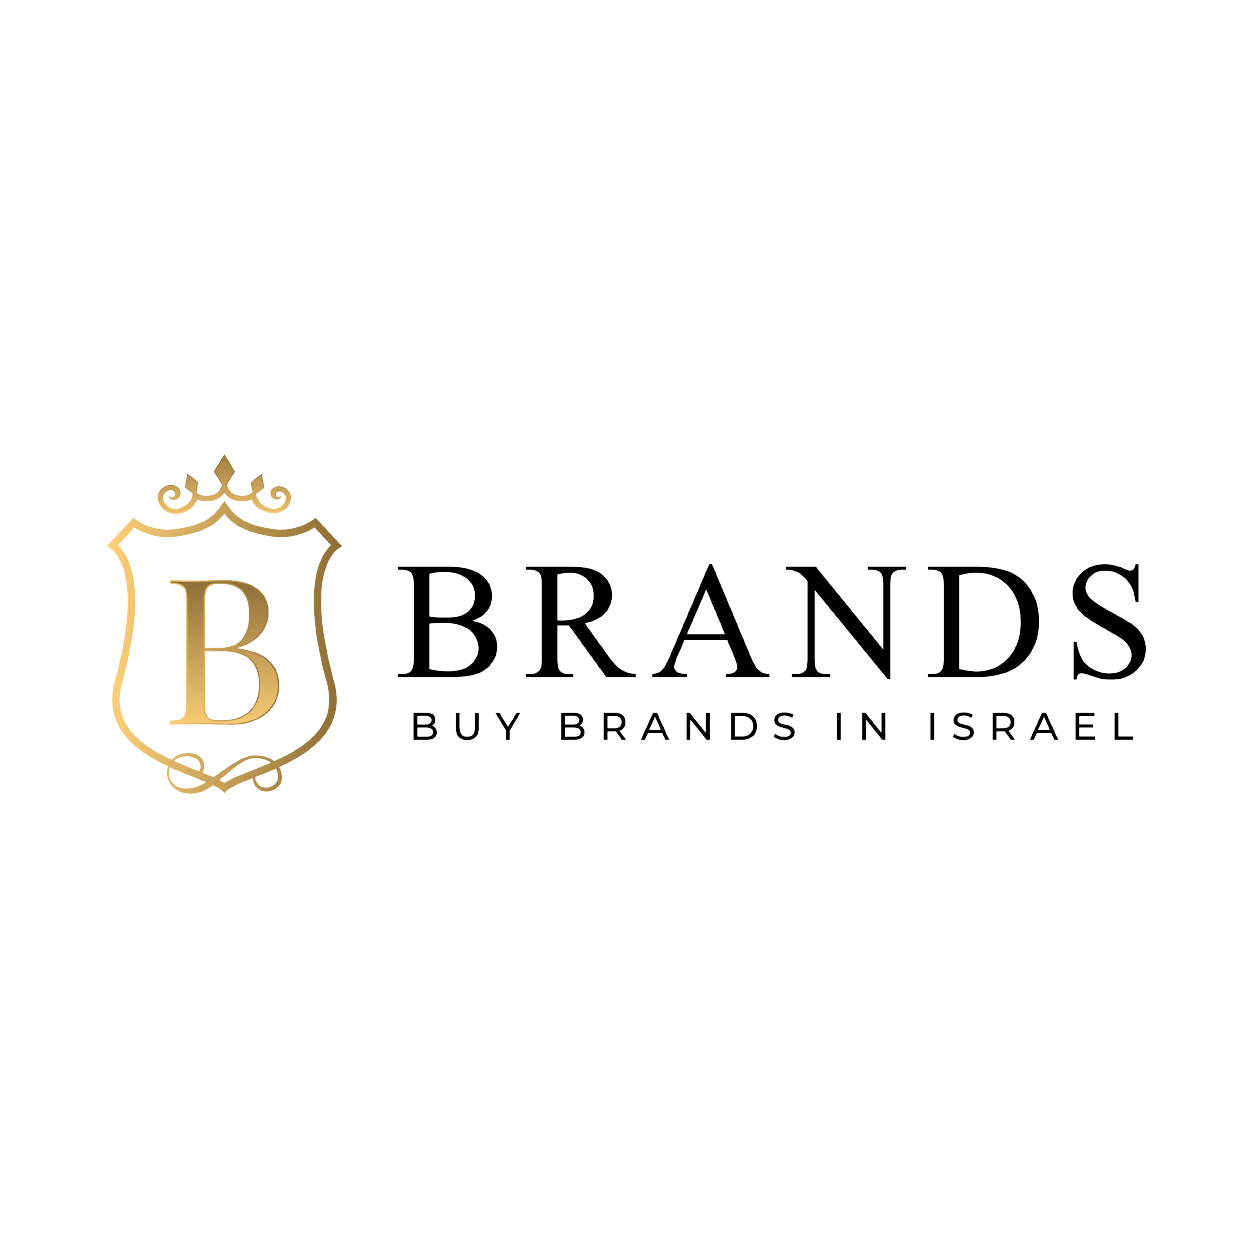 www.bbrands.co.il